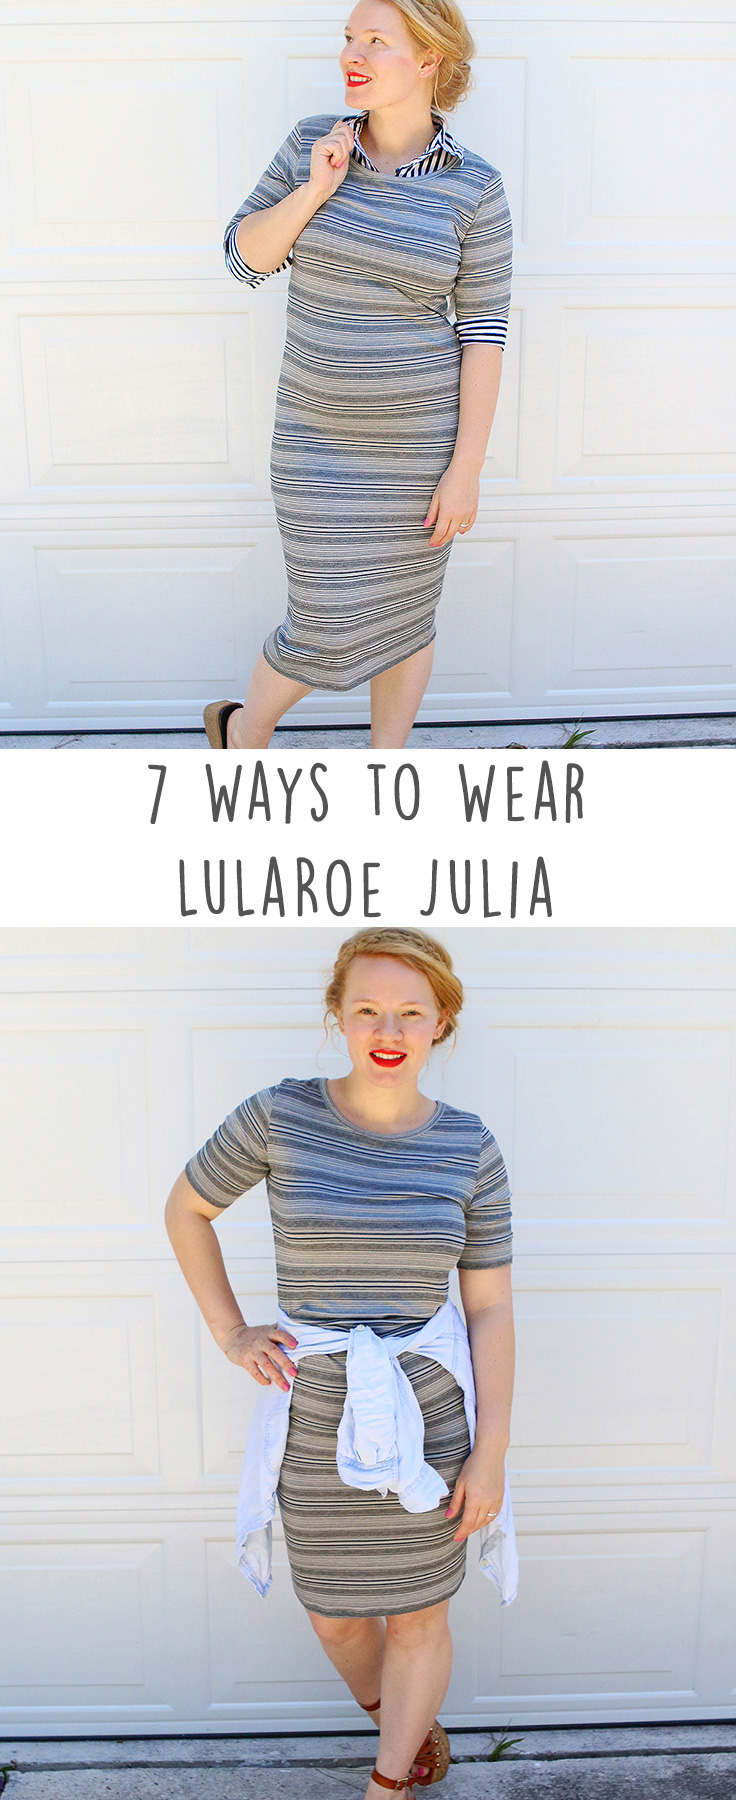 LuLaRoe Julia Dress Styled 7 Ways